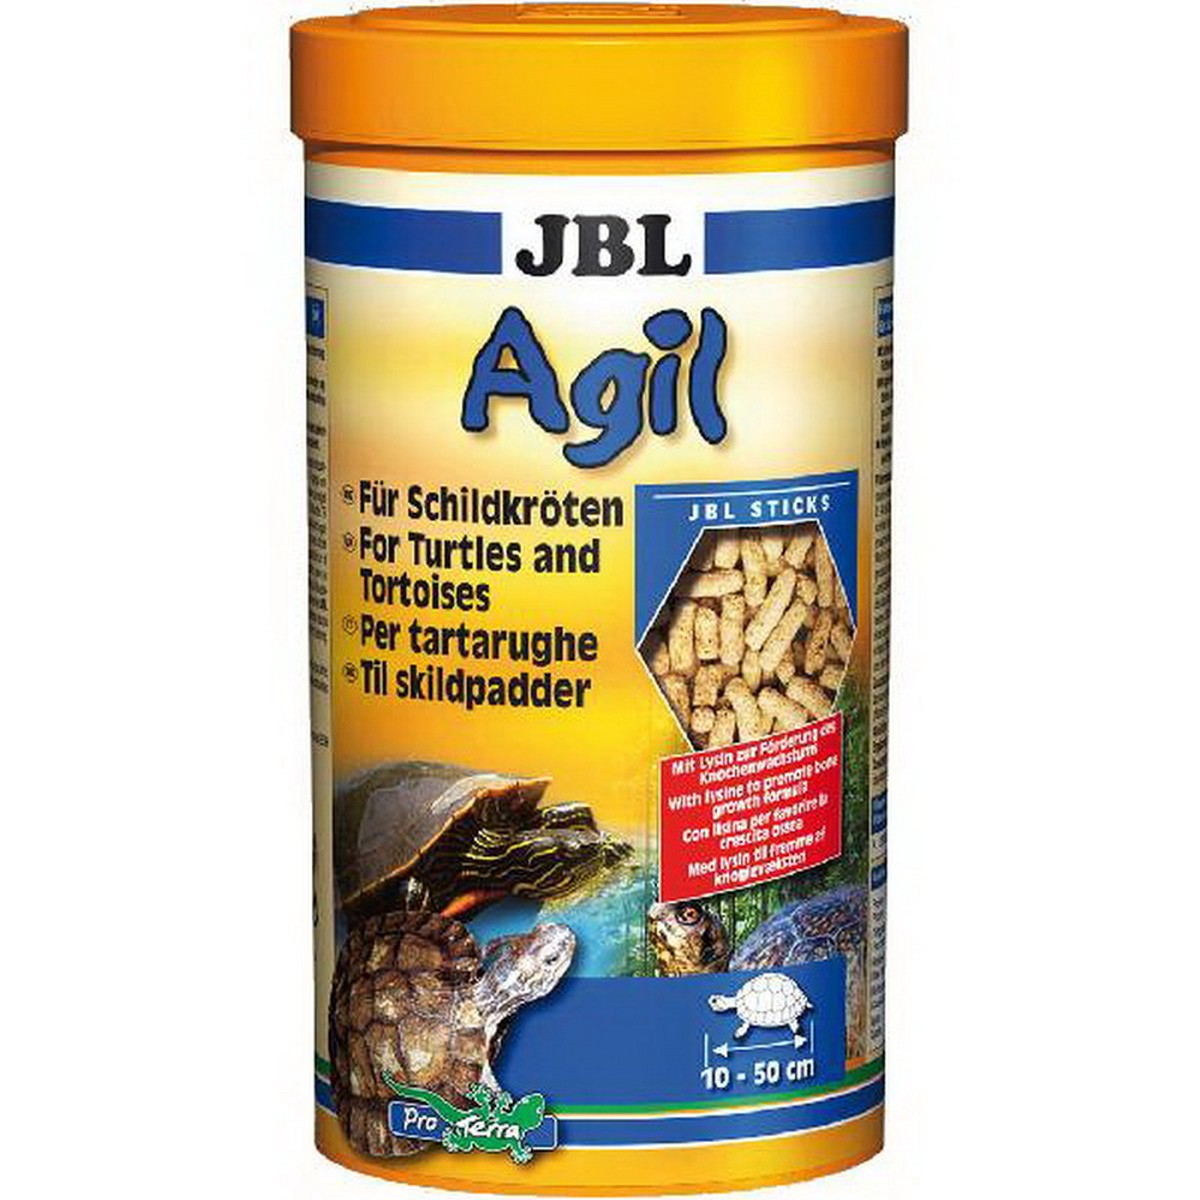   JBL Agil 250 ml F/NL  250ml